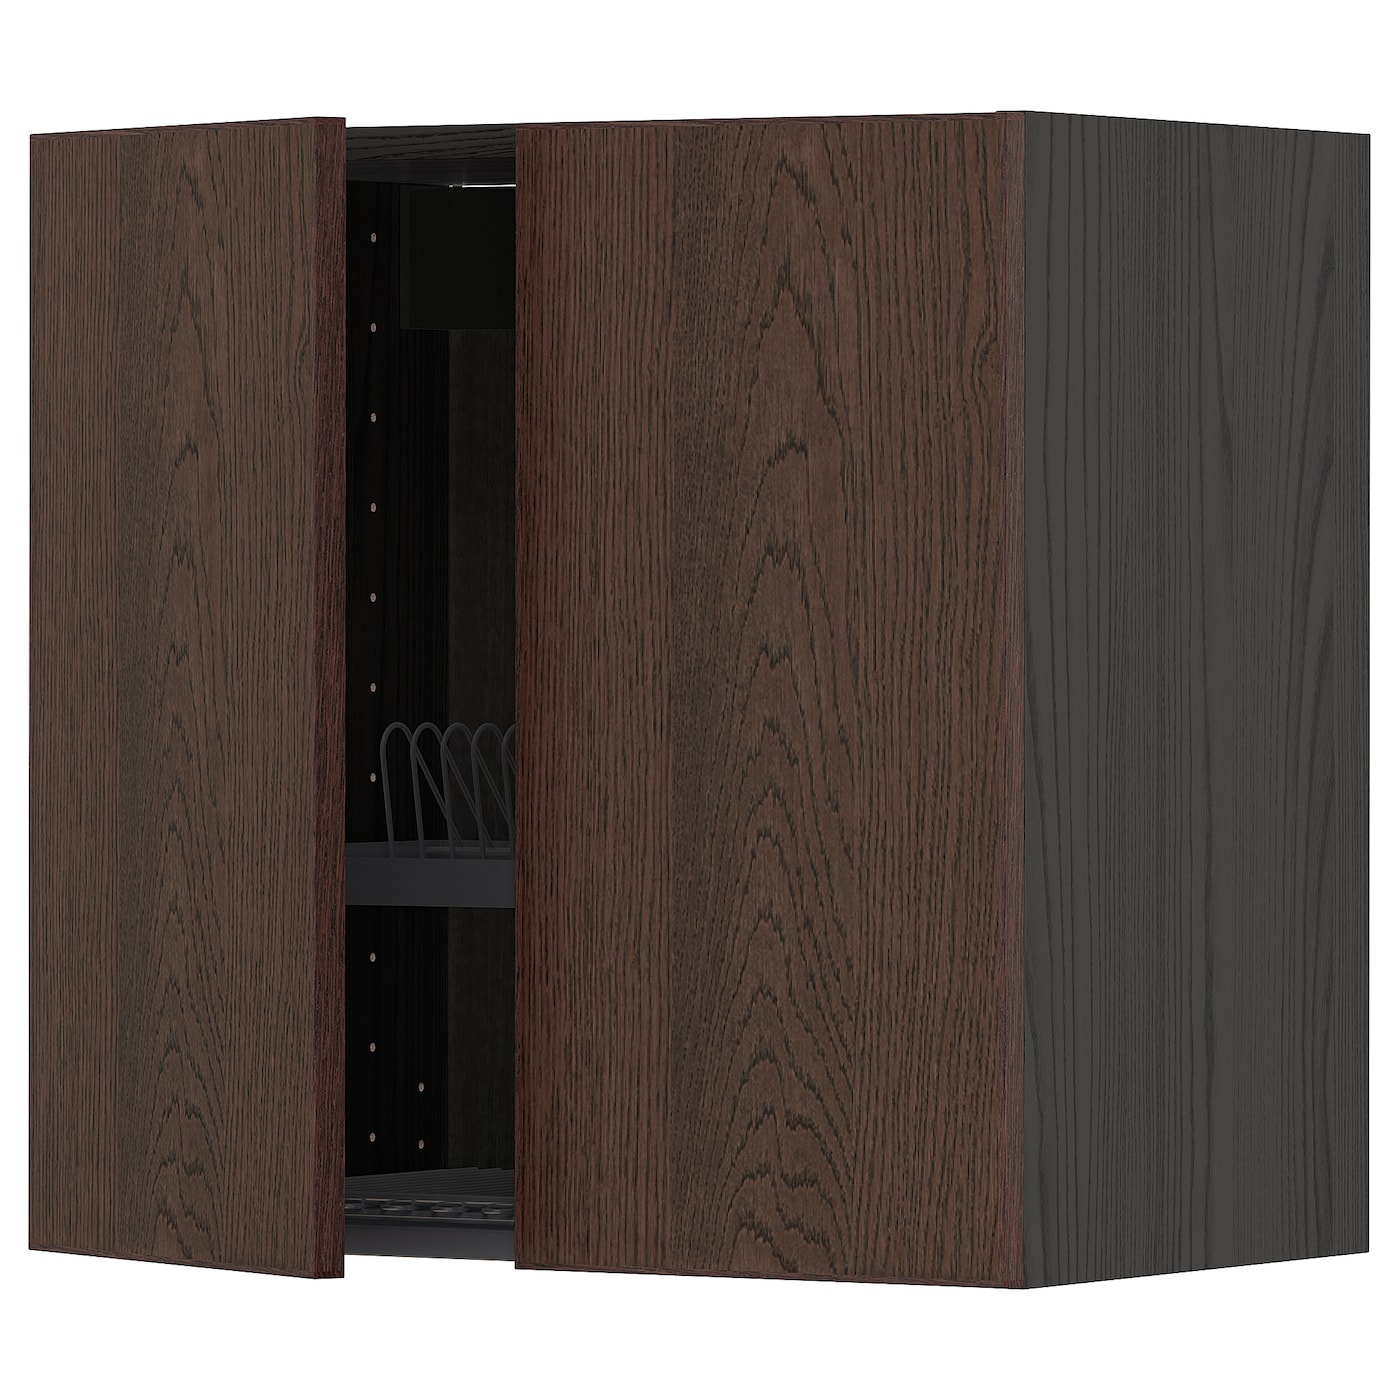 Навесной шкаф с сушилкой - METOD IKEA/ МЕТОД ИКЕА, 60х60 см, черный/коричневый